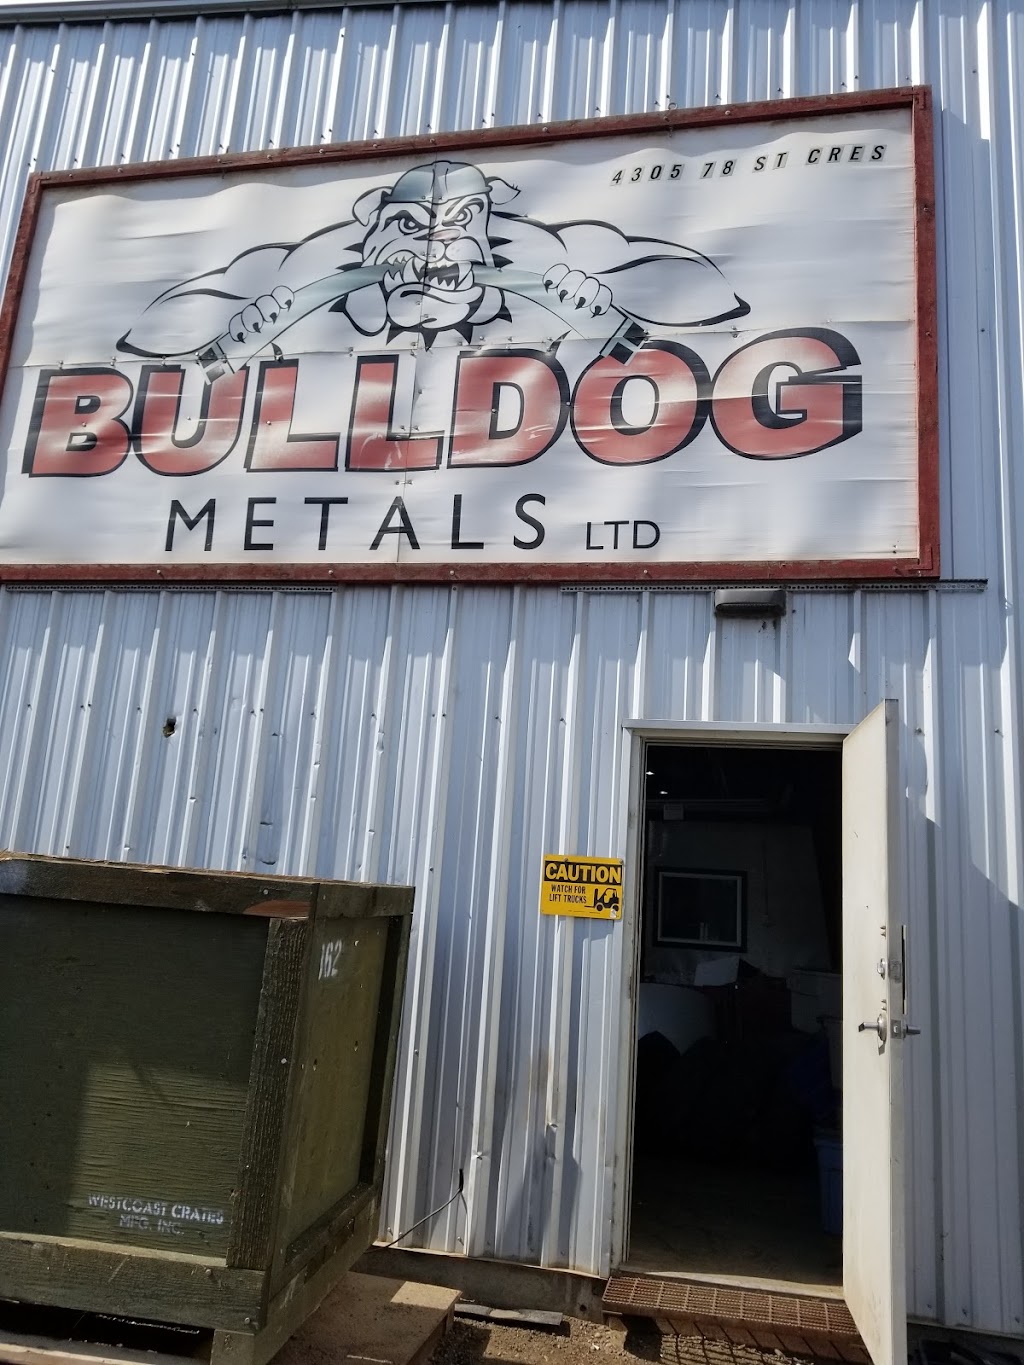 Bulldog Metals Ltd. | 4305 78 St Crescent, Red Deer, AB T4P 3E3, Canada | Phone: (403) 347-5815